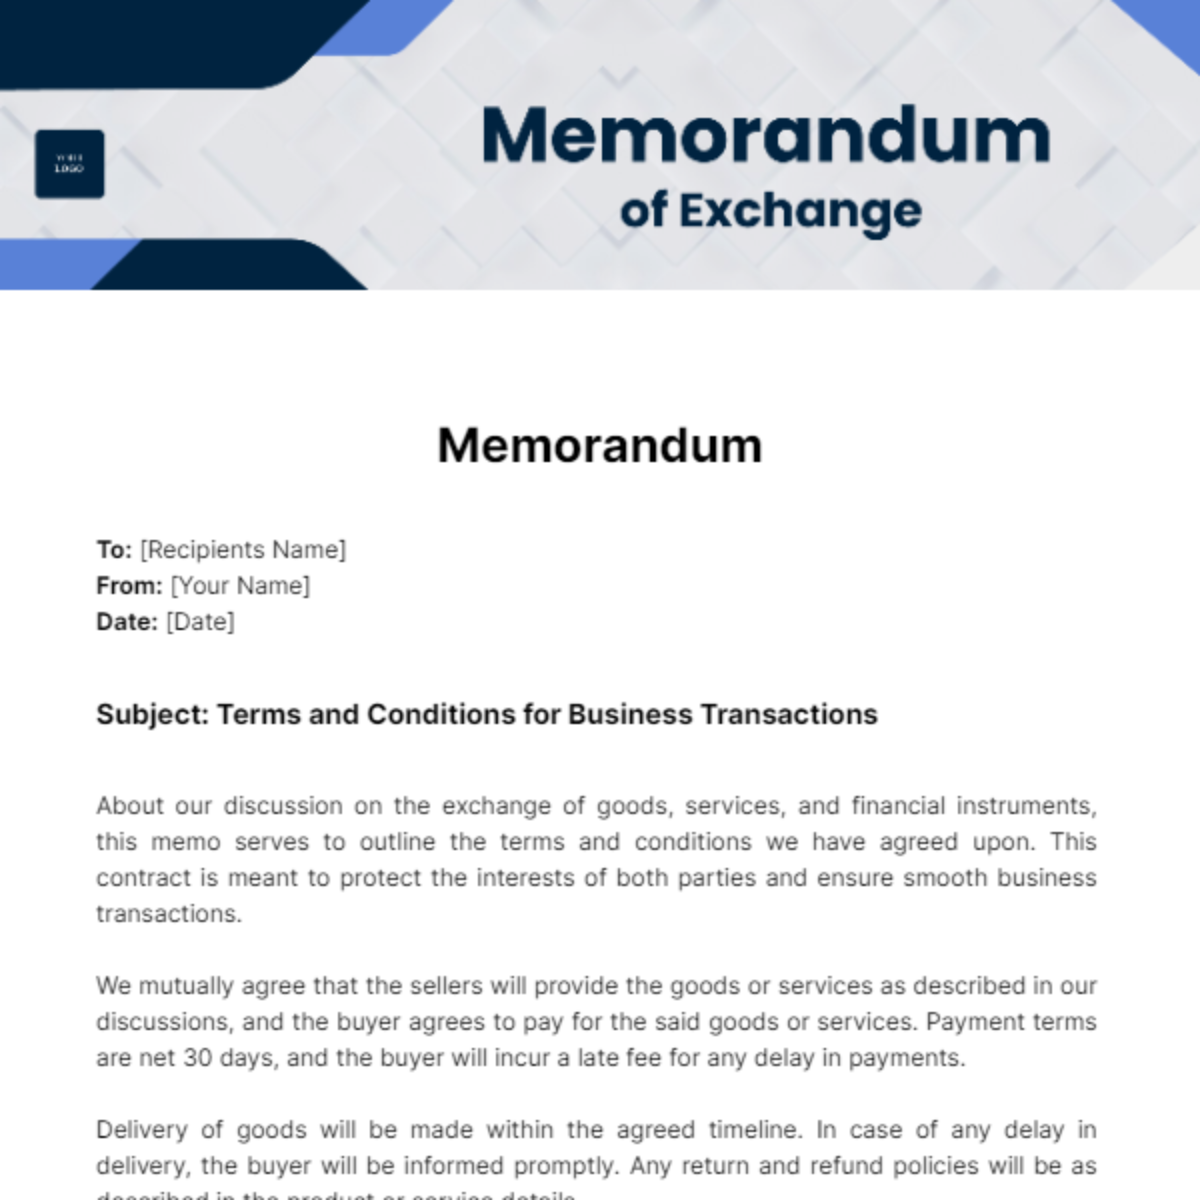 Memorandum of exchange